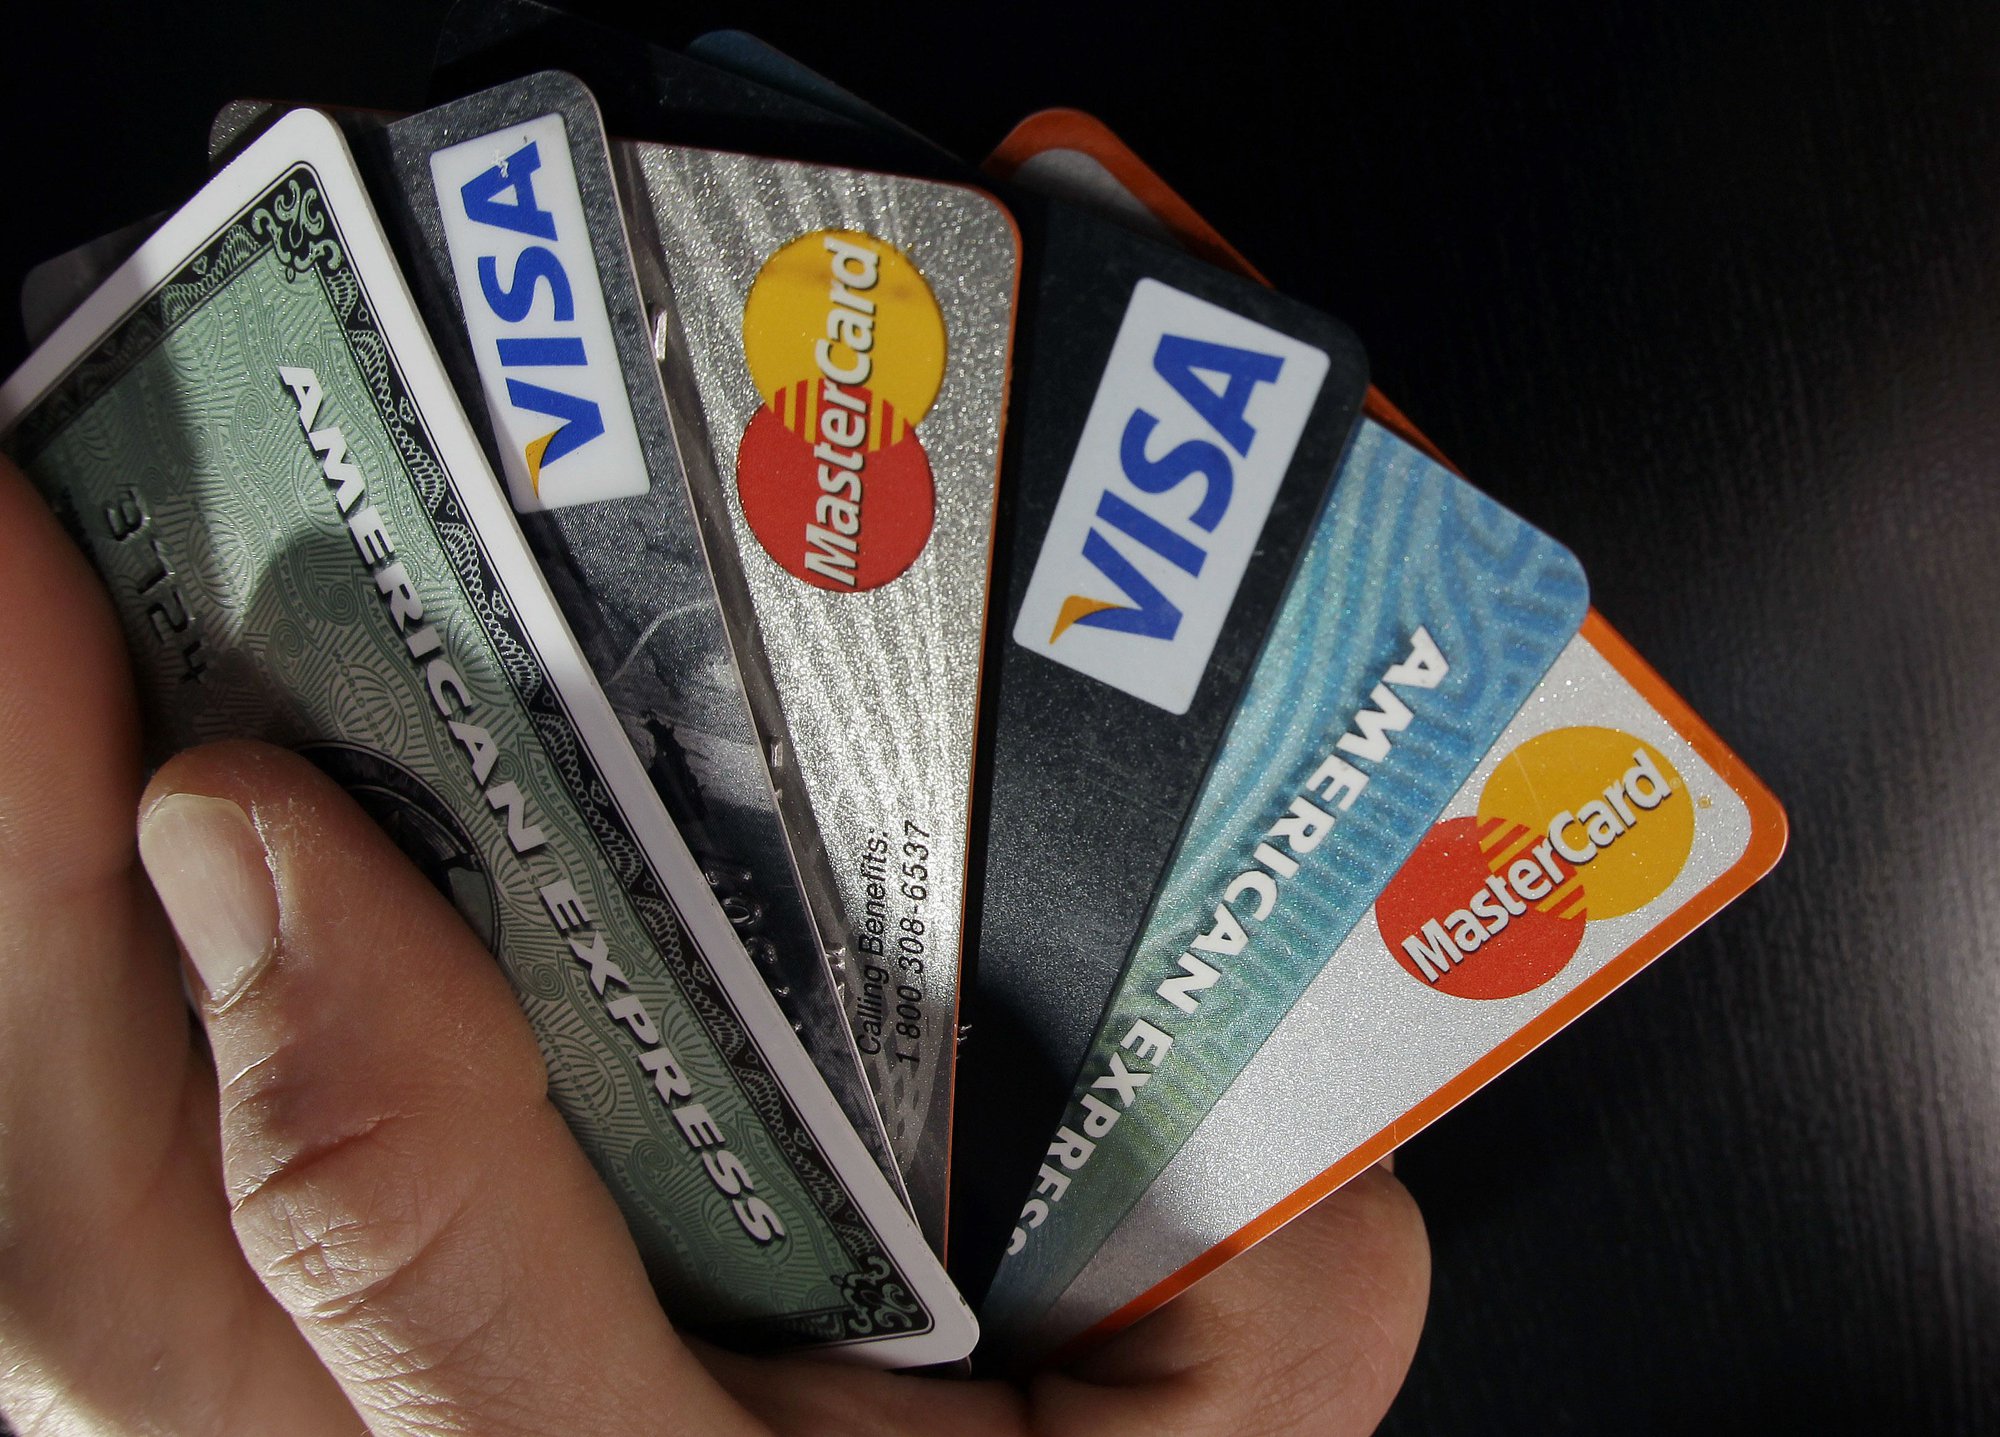 Dùng thẻ tín dụng không bao giờ sợ ngập trong nợ nếu biết 3 bí kíp này - Ảnh 1.